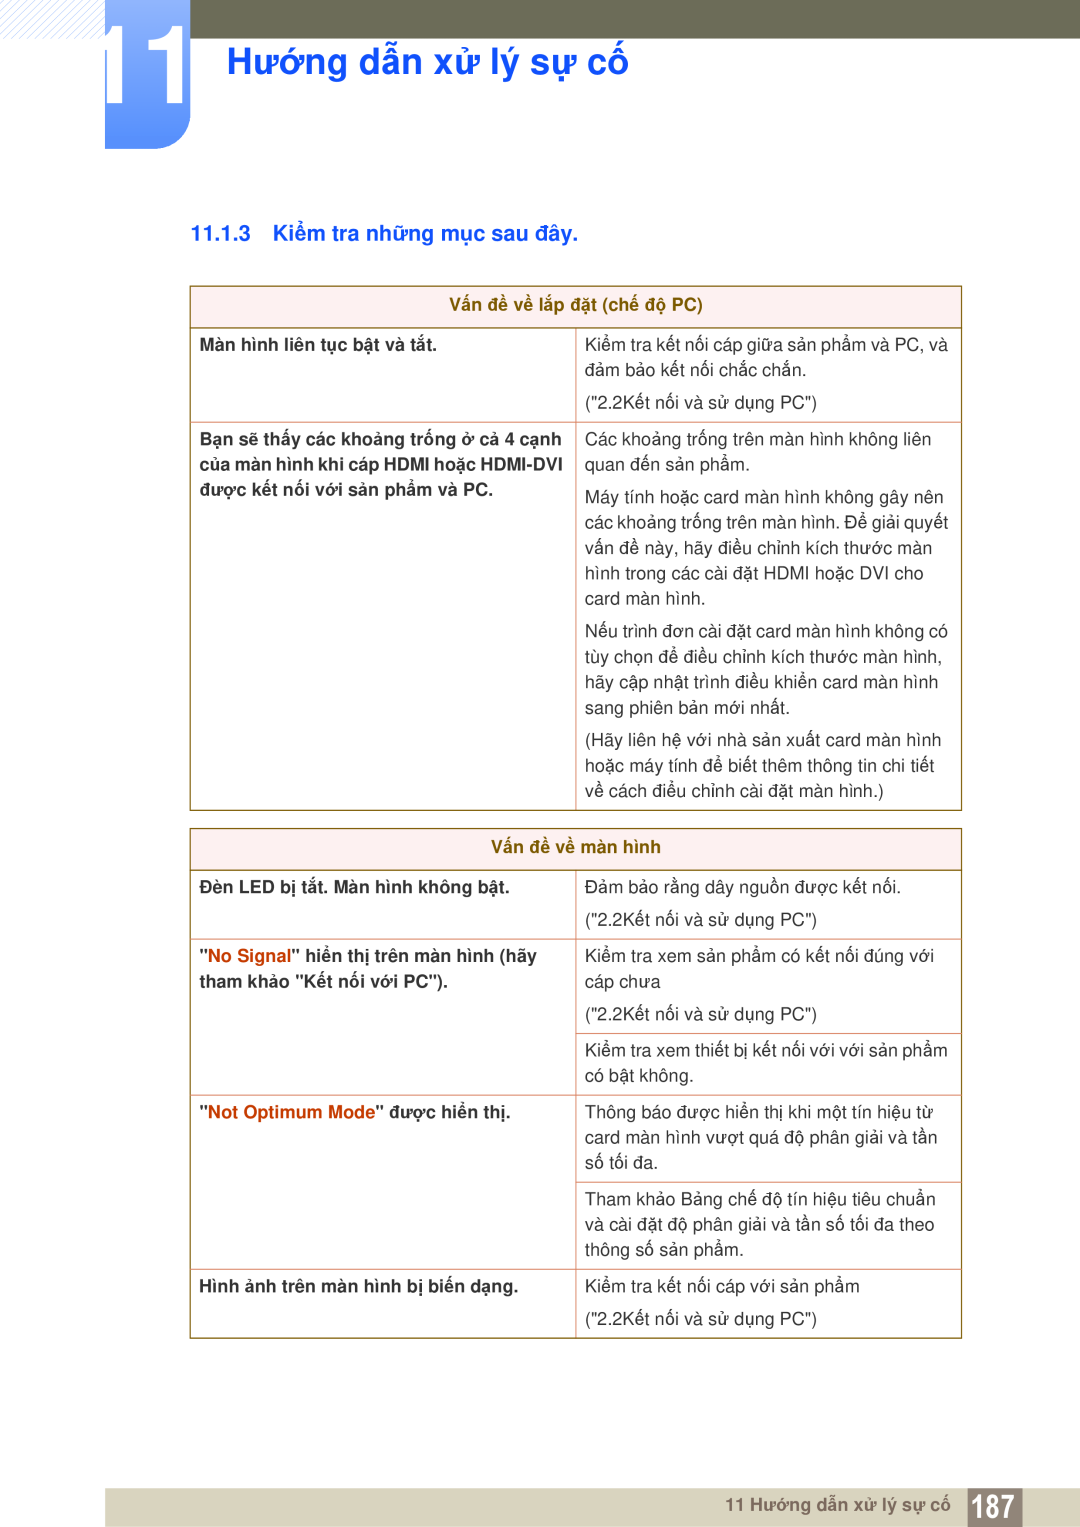 Samsung LH55MEPLGC/XY manual 11.1.3 Kiểm tra những mục sau đây, 11 Hướng dẫn xử lý sự cố, Vấn đề về lắp đặt chế độ PC 